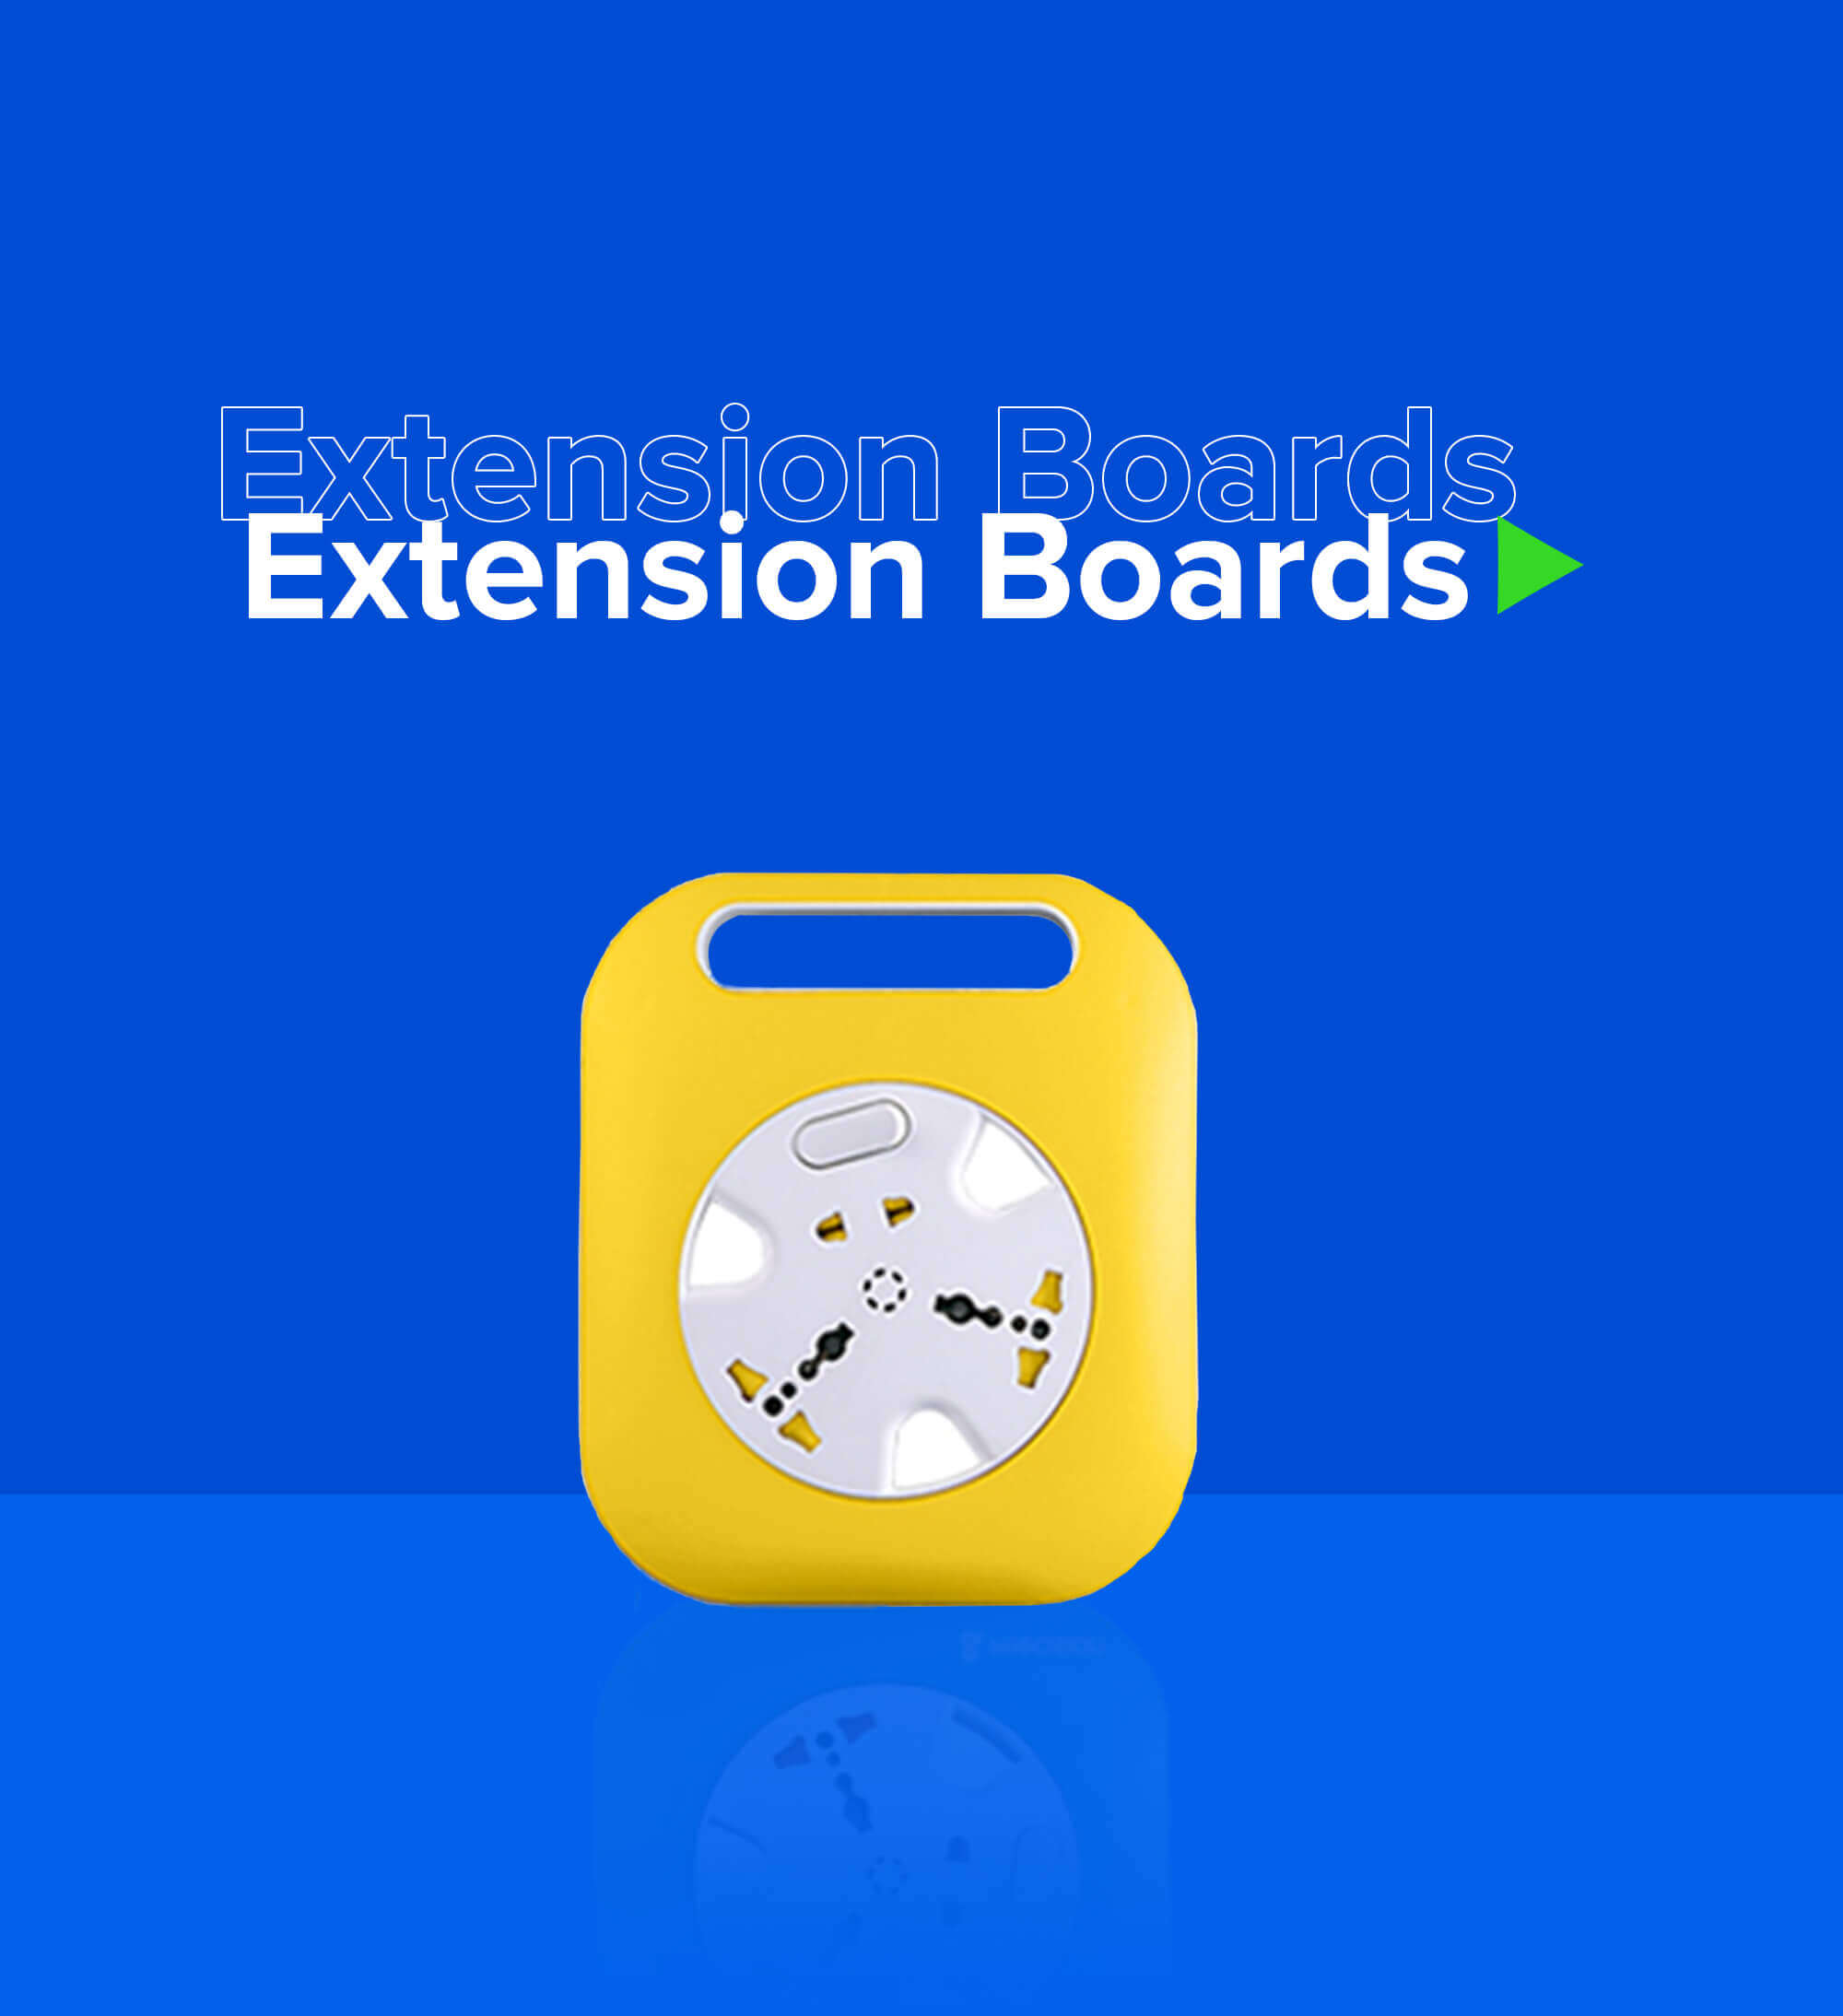 Extenstion Board